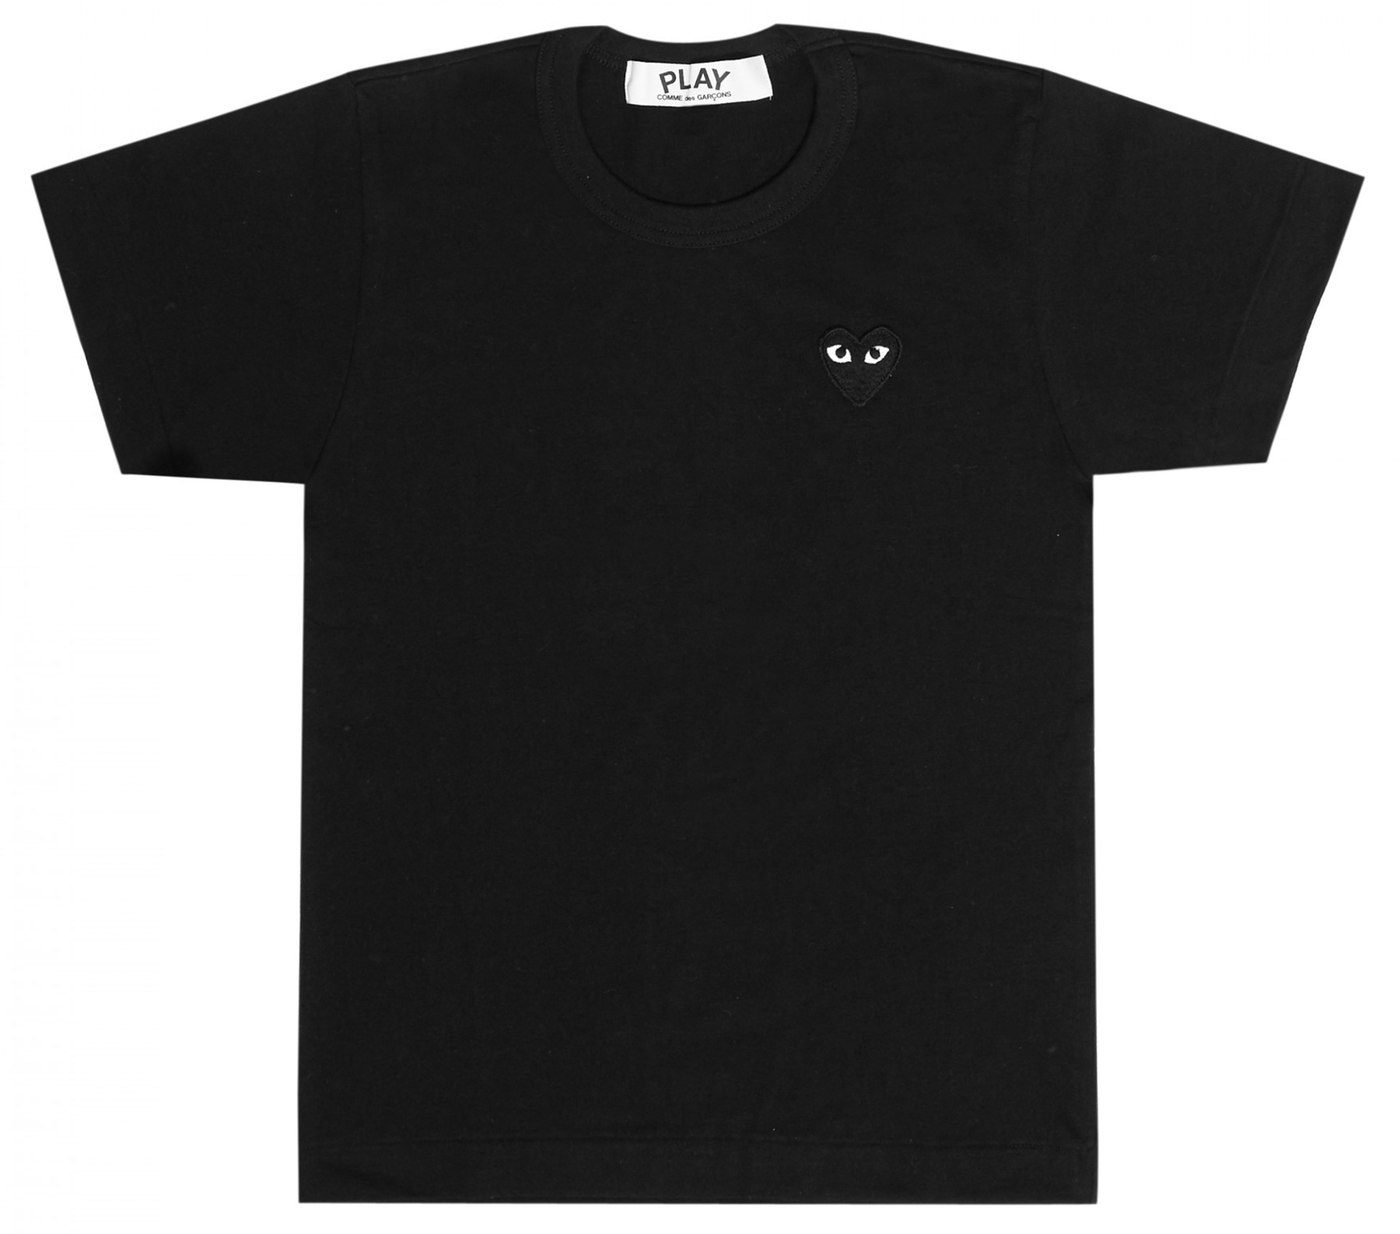 Comme-des-Garcons-Play-T-Shirt-With-Black-Emblem-Men-Black-1